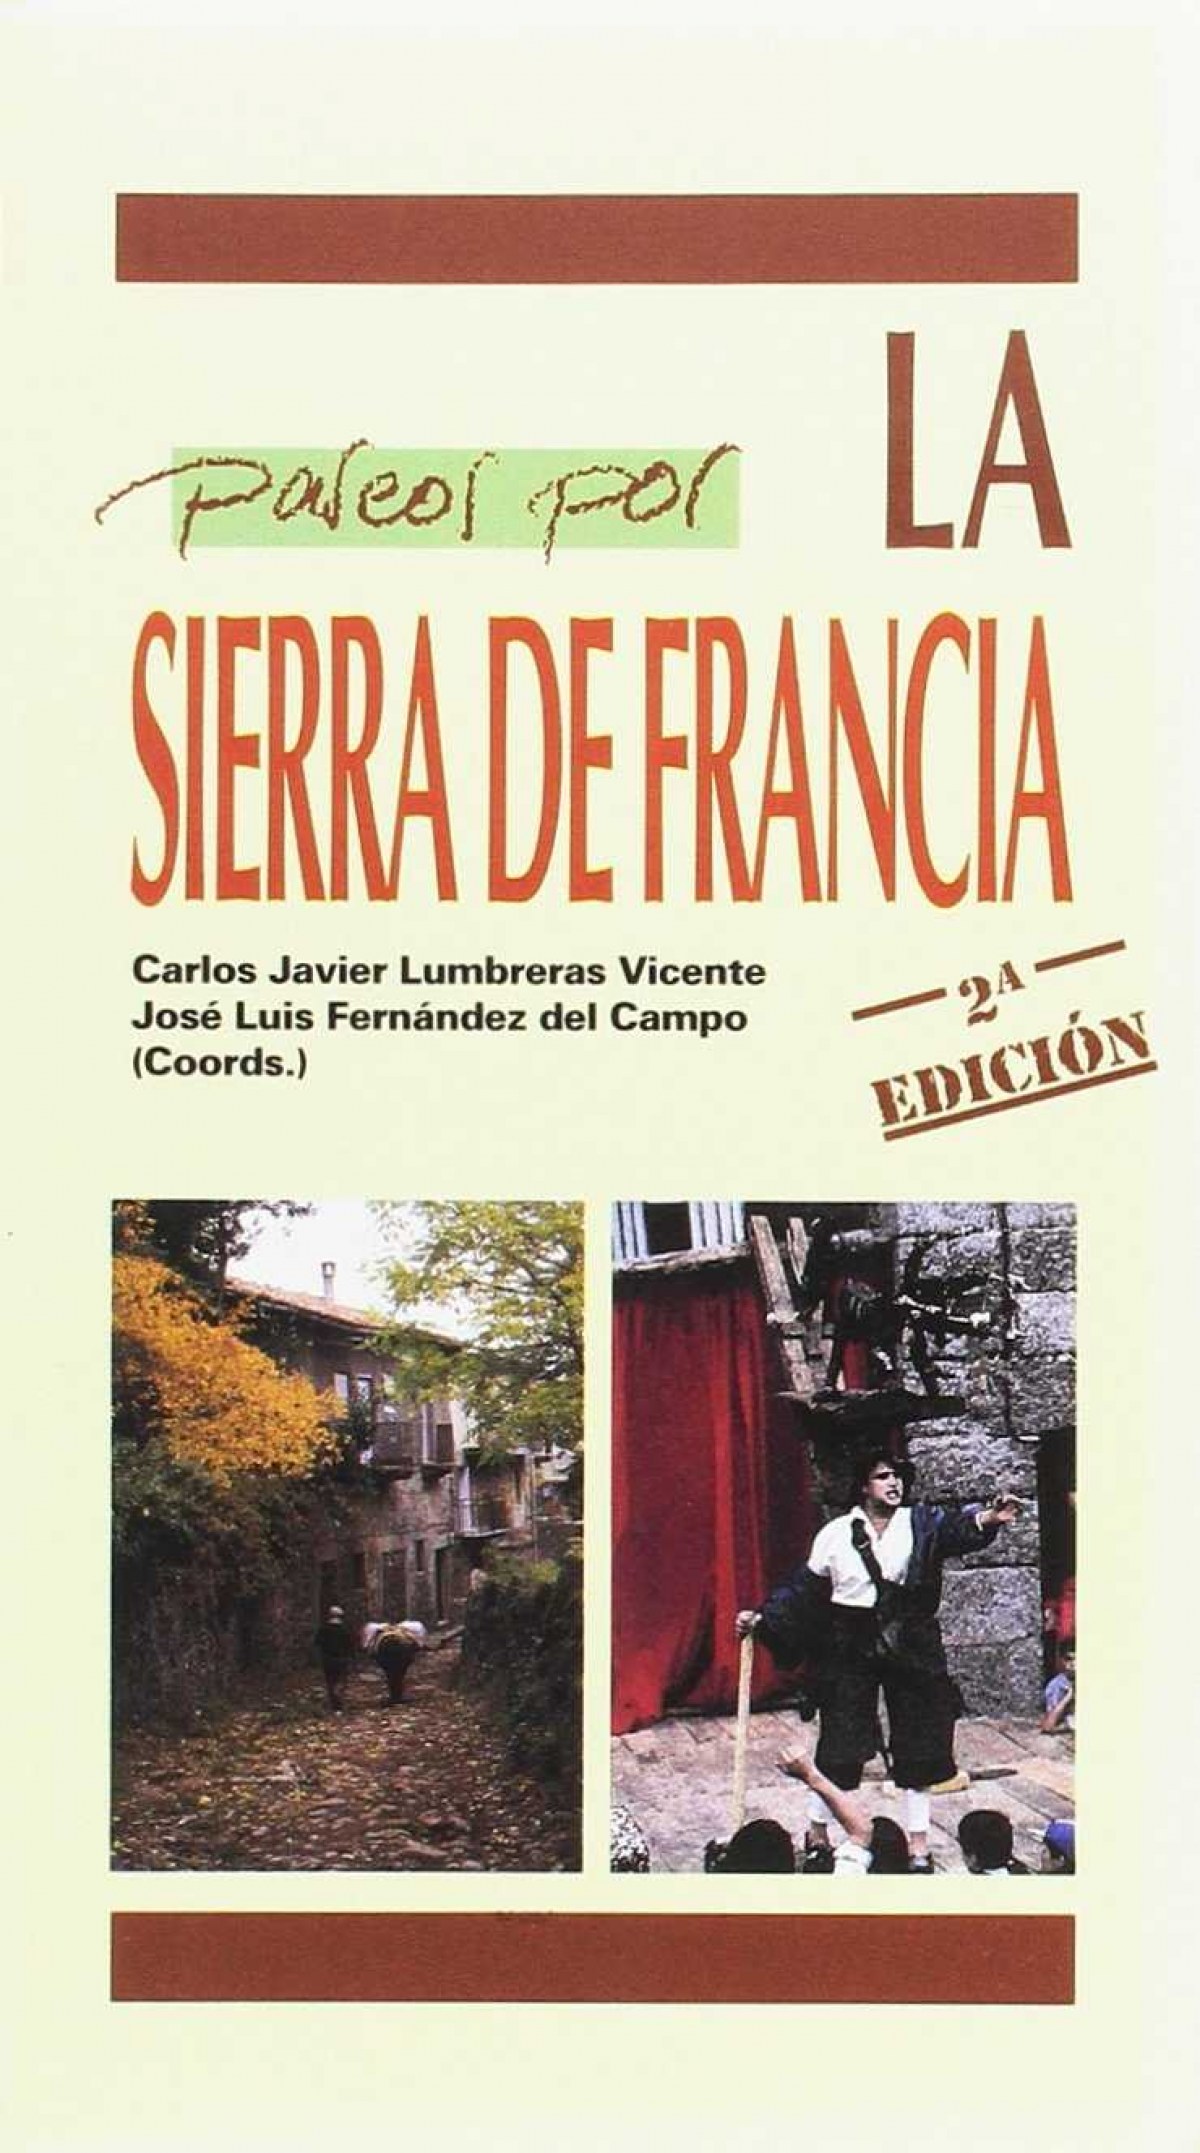 Paseos por sierra de francia - Lumbreras Vicente,Carlos/Fernandez Jose